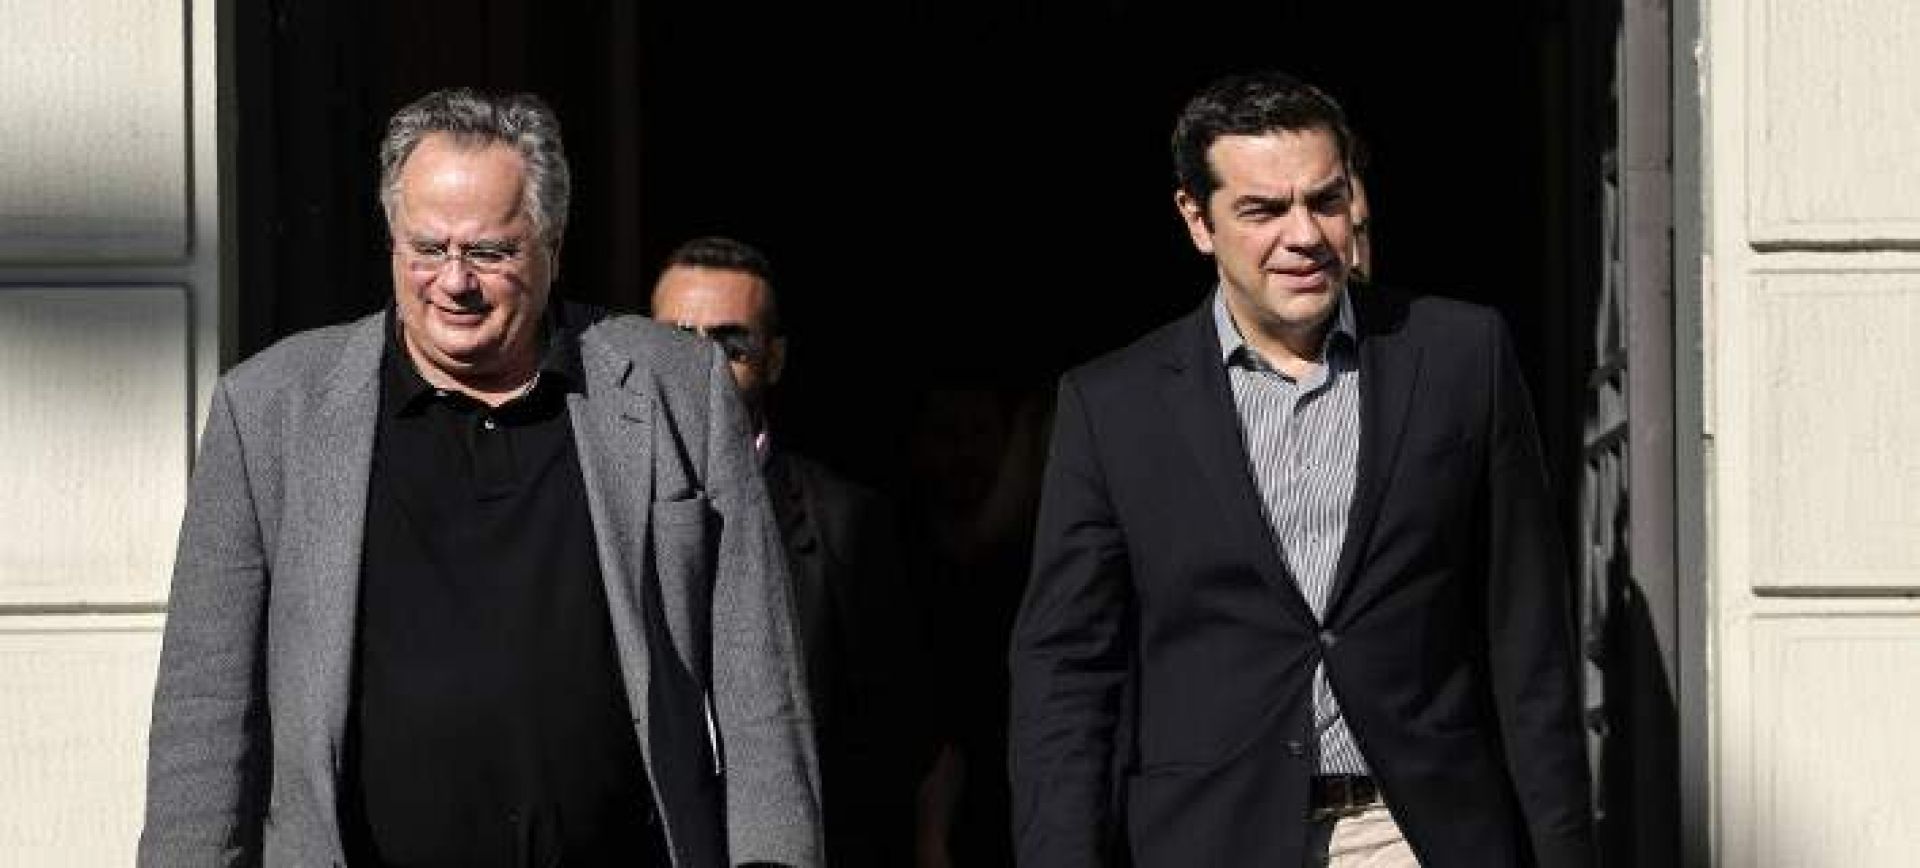 Η ελληνική κυβέρνηση φοβάται το συλλαλητήριο της Κυριακής: «Λύση μόνο όταν αλλάξει το σκοπιανό Σύνταγμα»